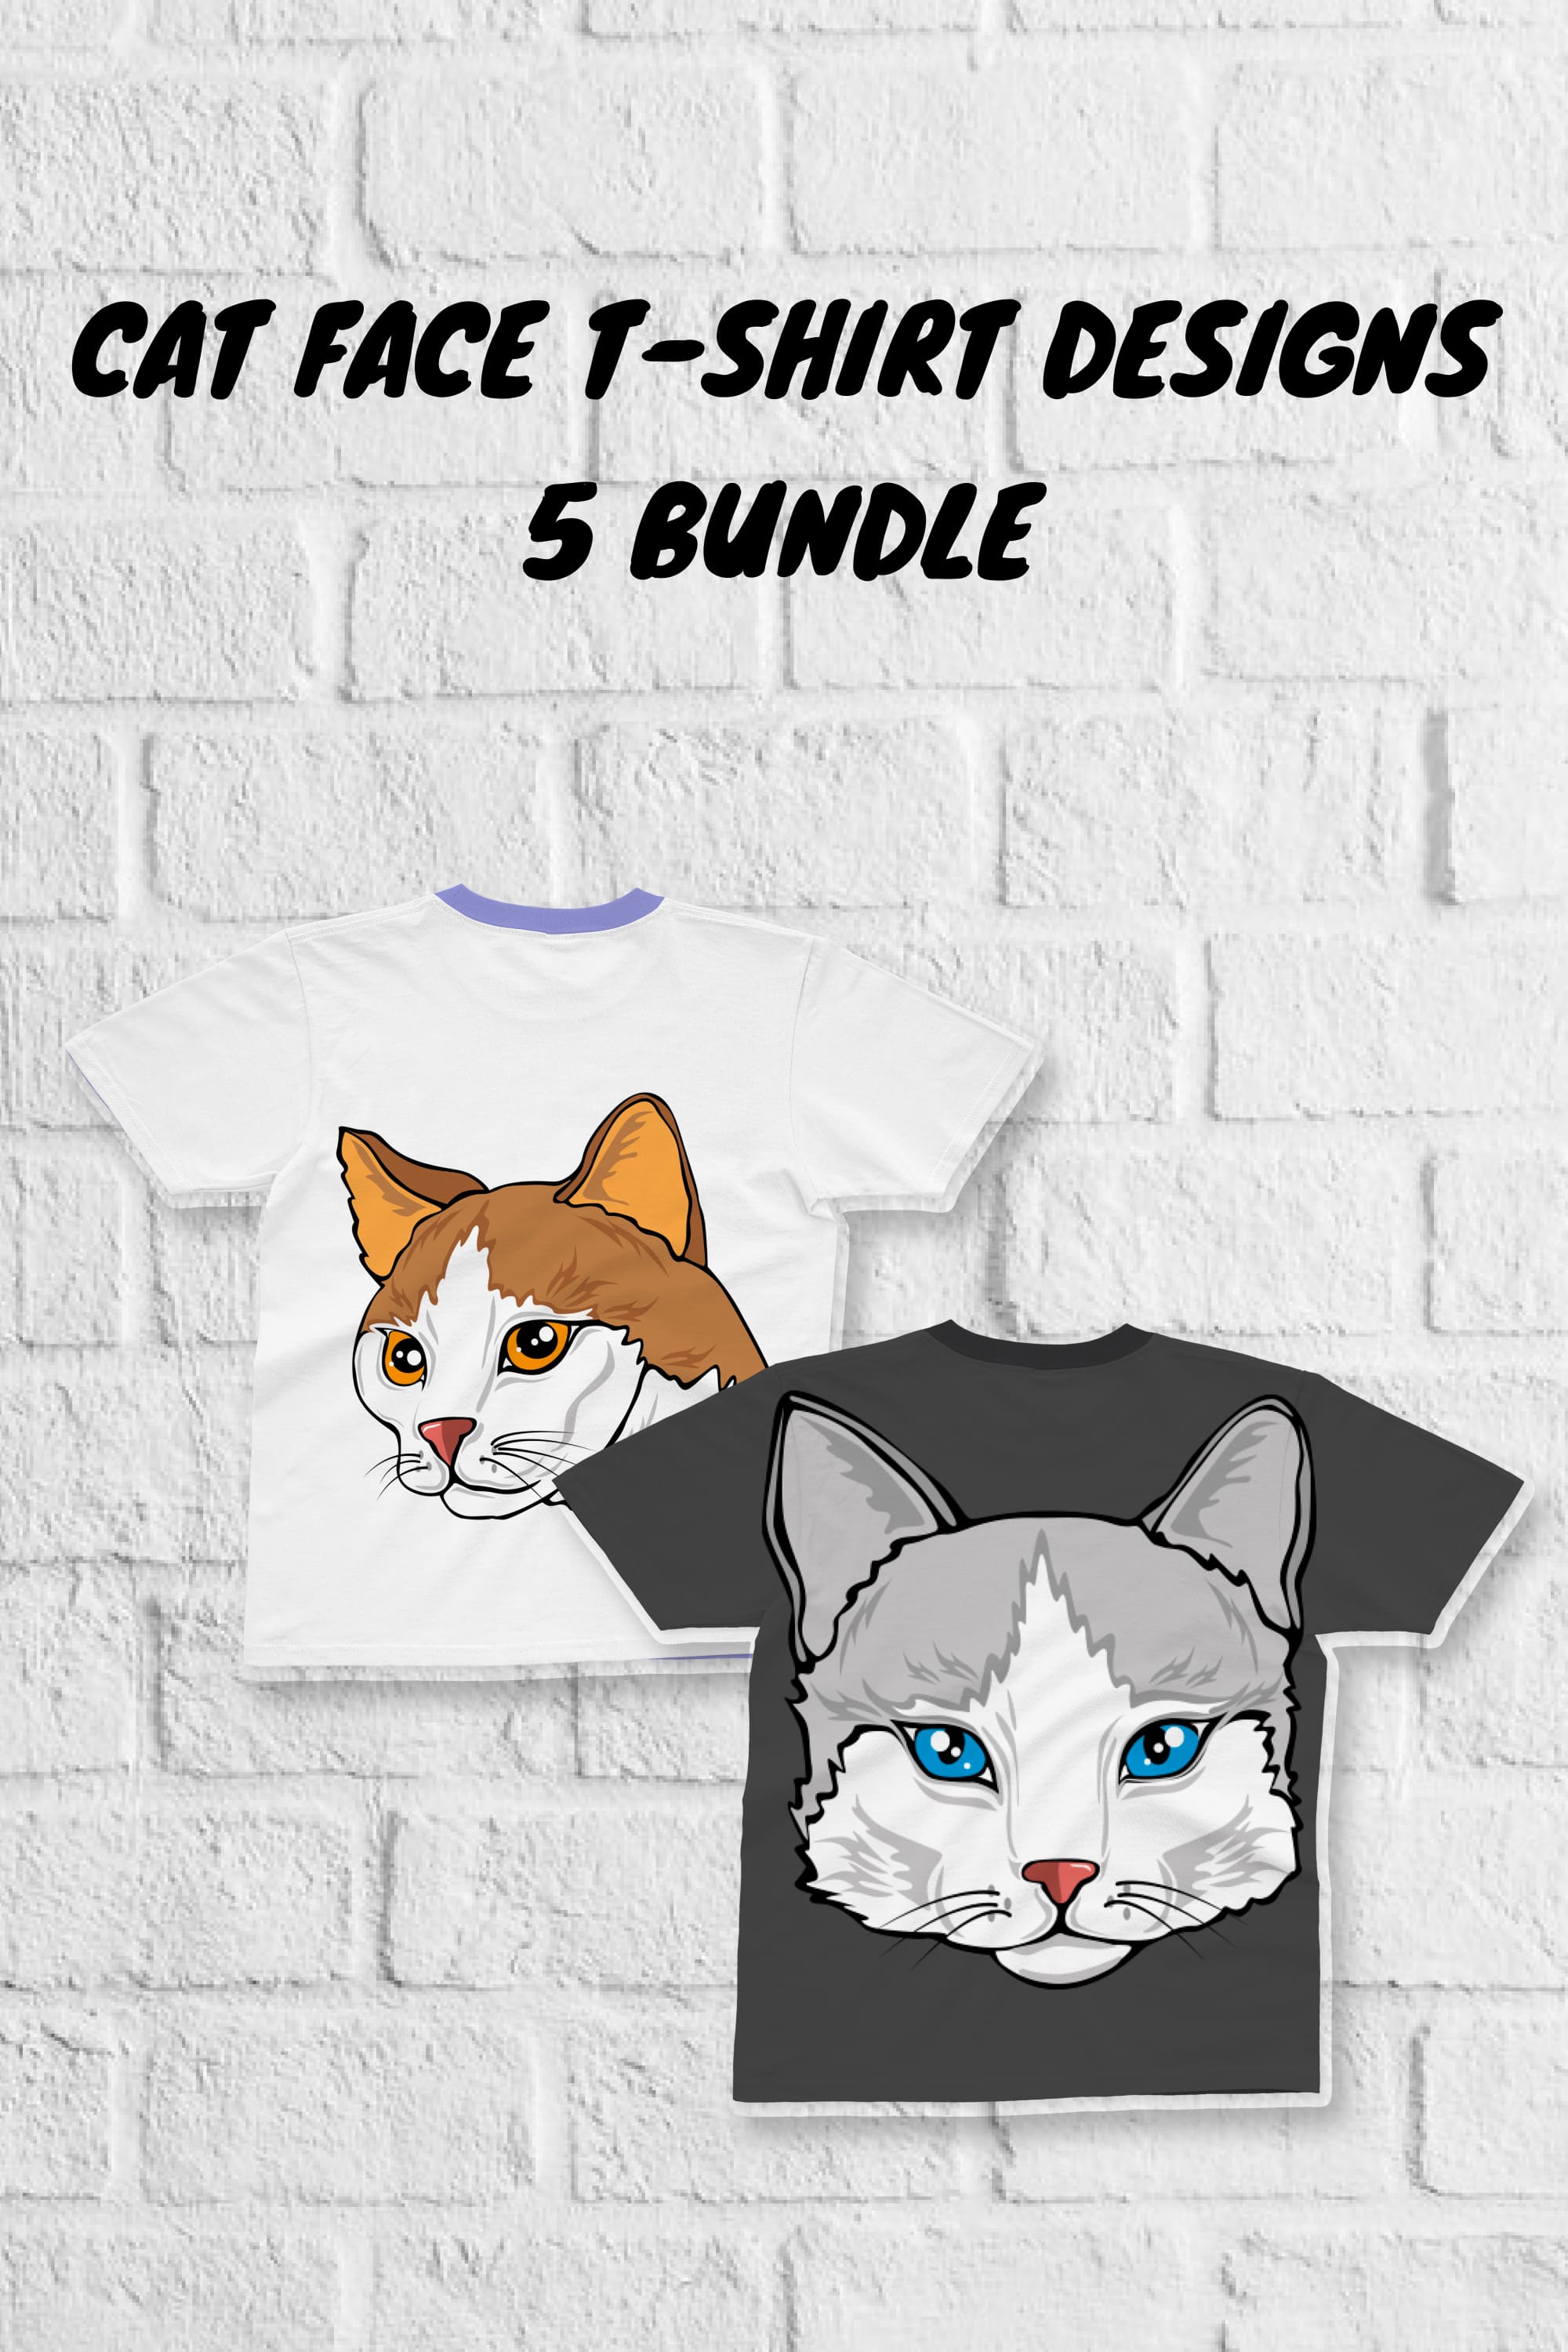 Cat Face T-shirt Designs Bundle - Pinterest.